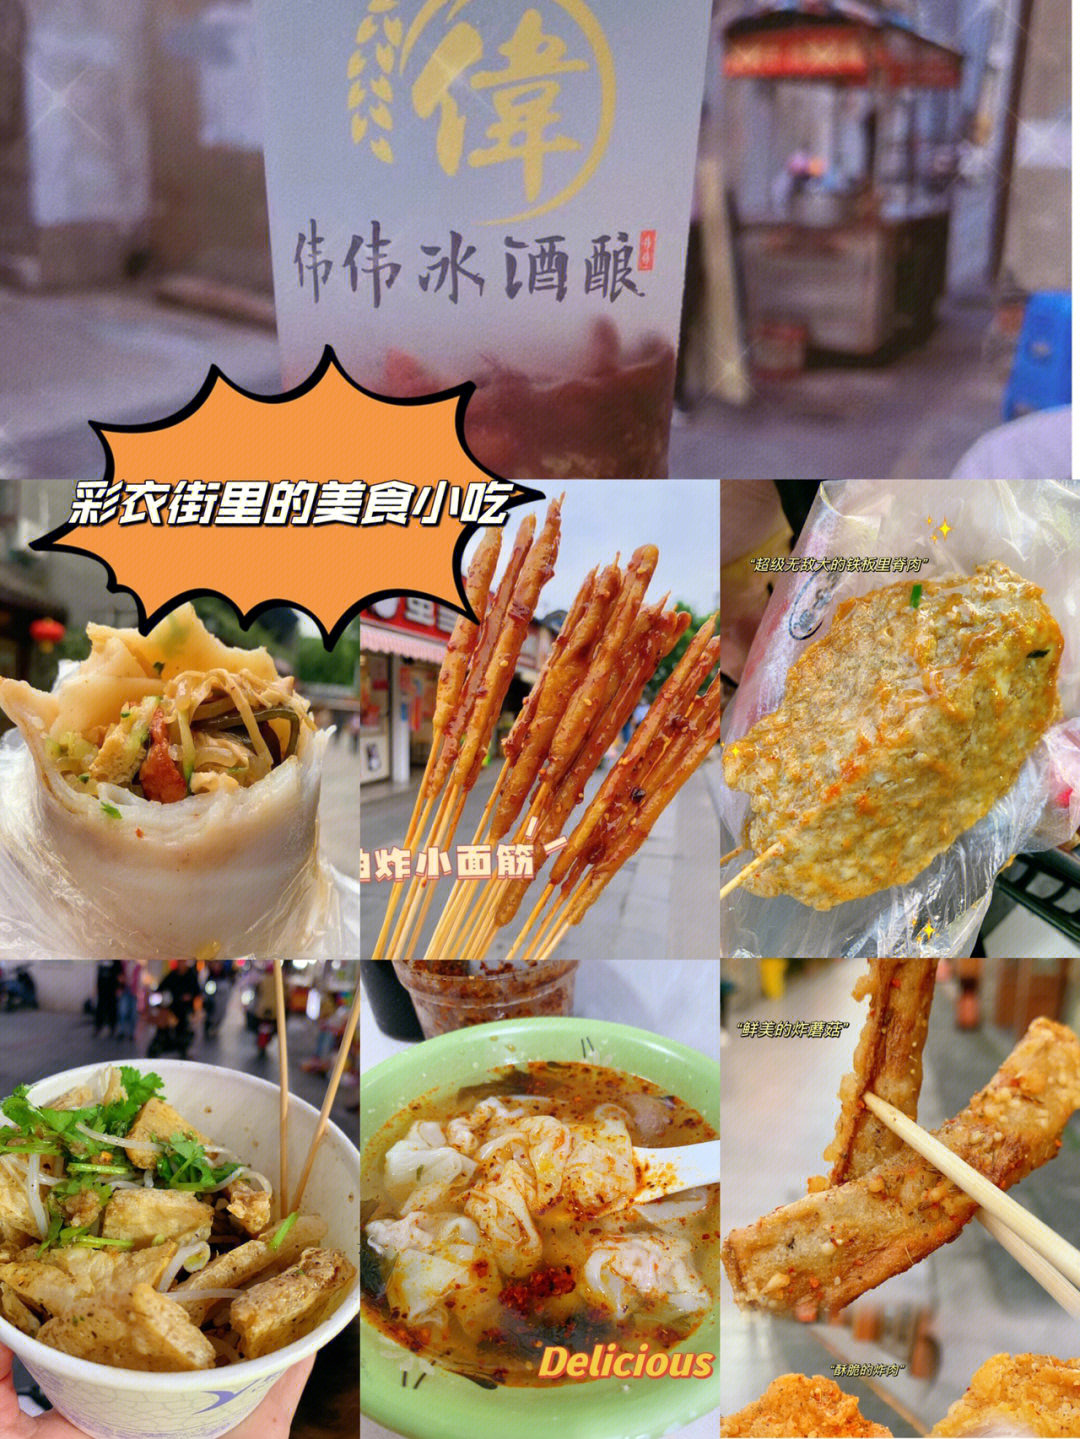 扬州彩衣街美食图片